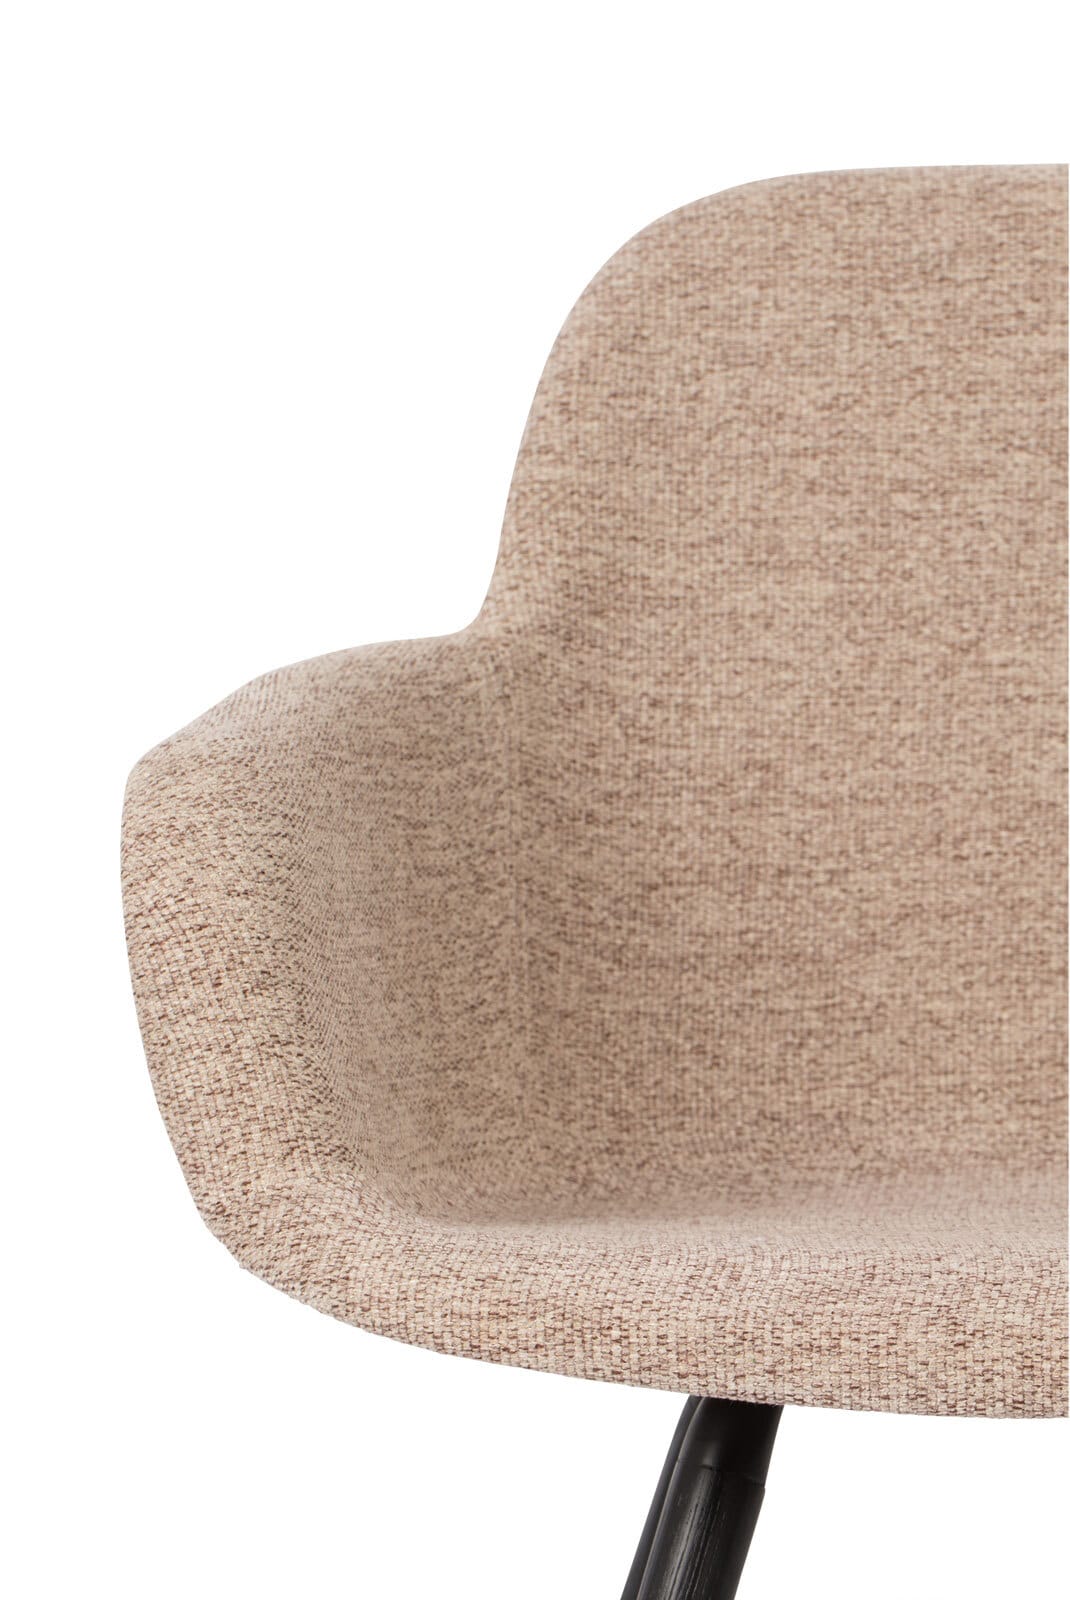 zuiver Stuhl ALBERT KUIP SOFT mit Armlehnen Textil beige